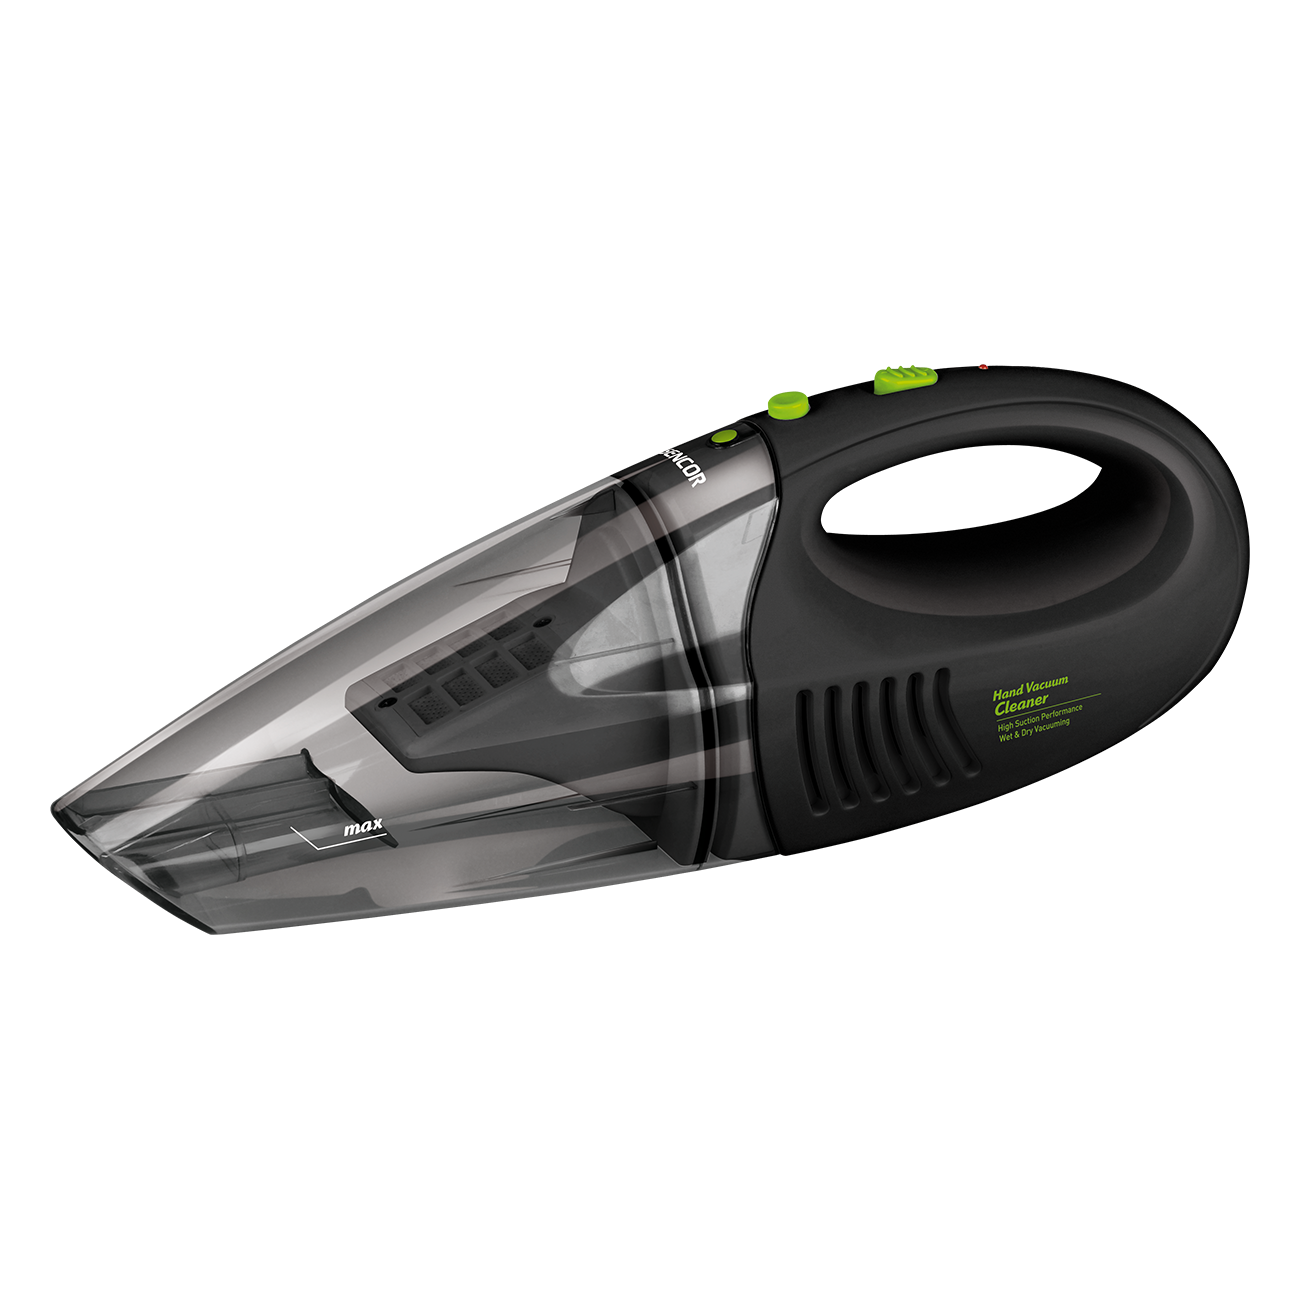 SVC 190B Cordless Hand-held Vacuum Cleaner